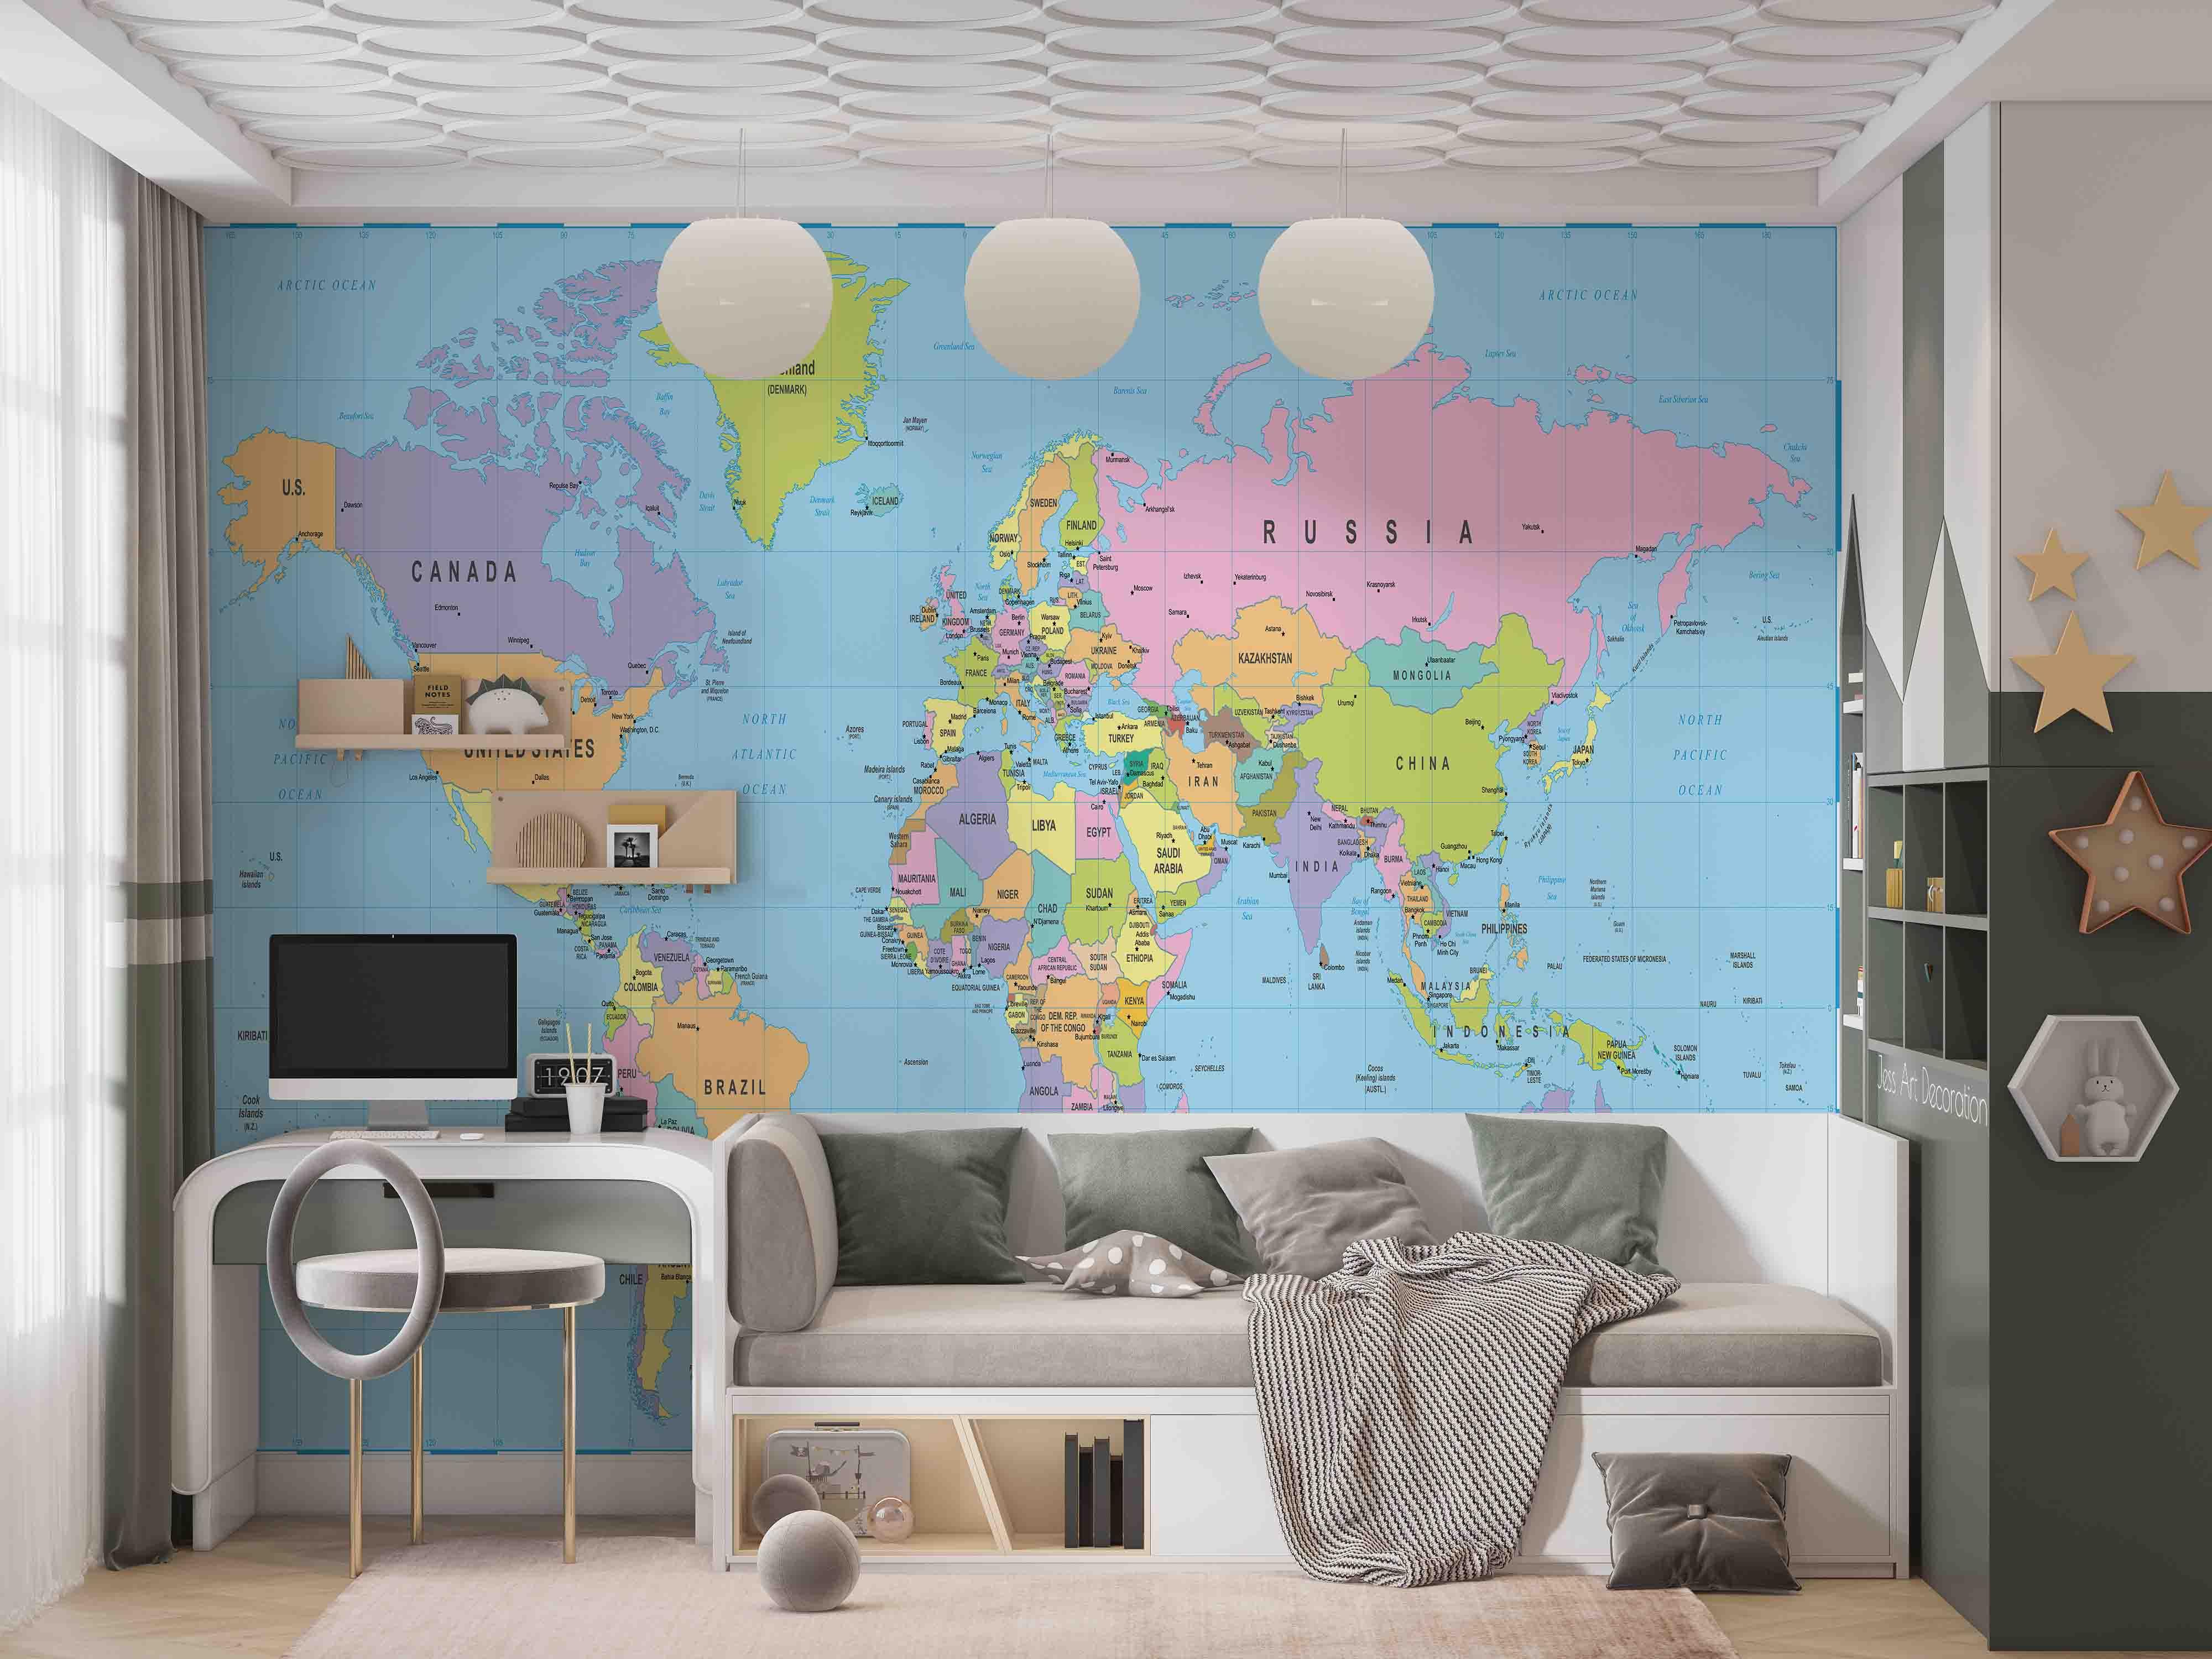 3D World Map Color Wall Mural Wallpaper GD 2648- Jess Art Decoration